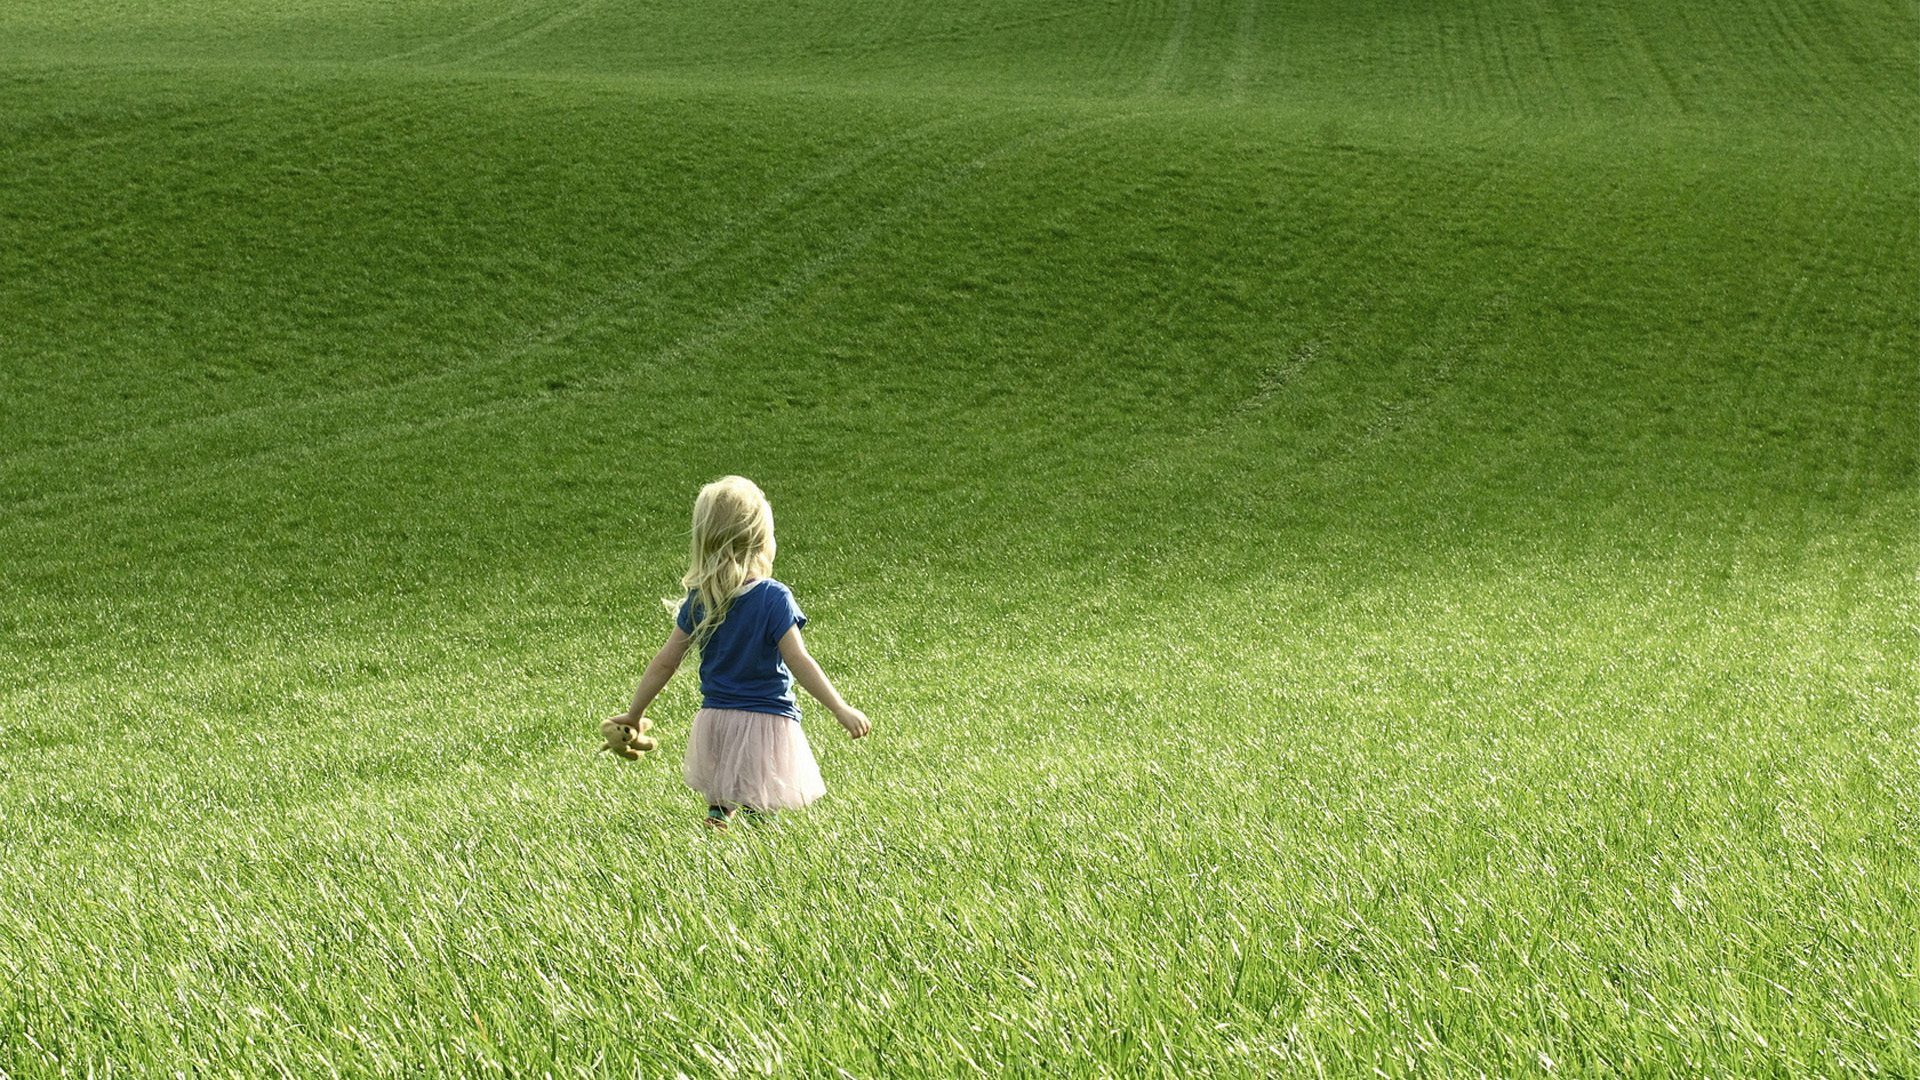 Cute little girl rural scenery desktop wallpaper